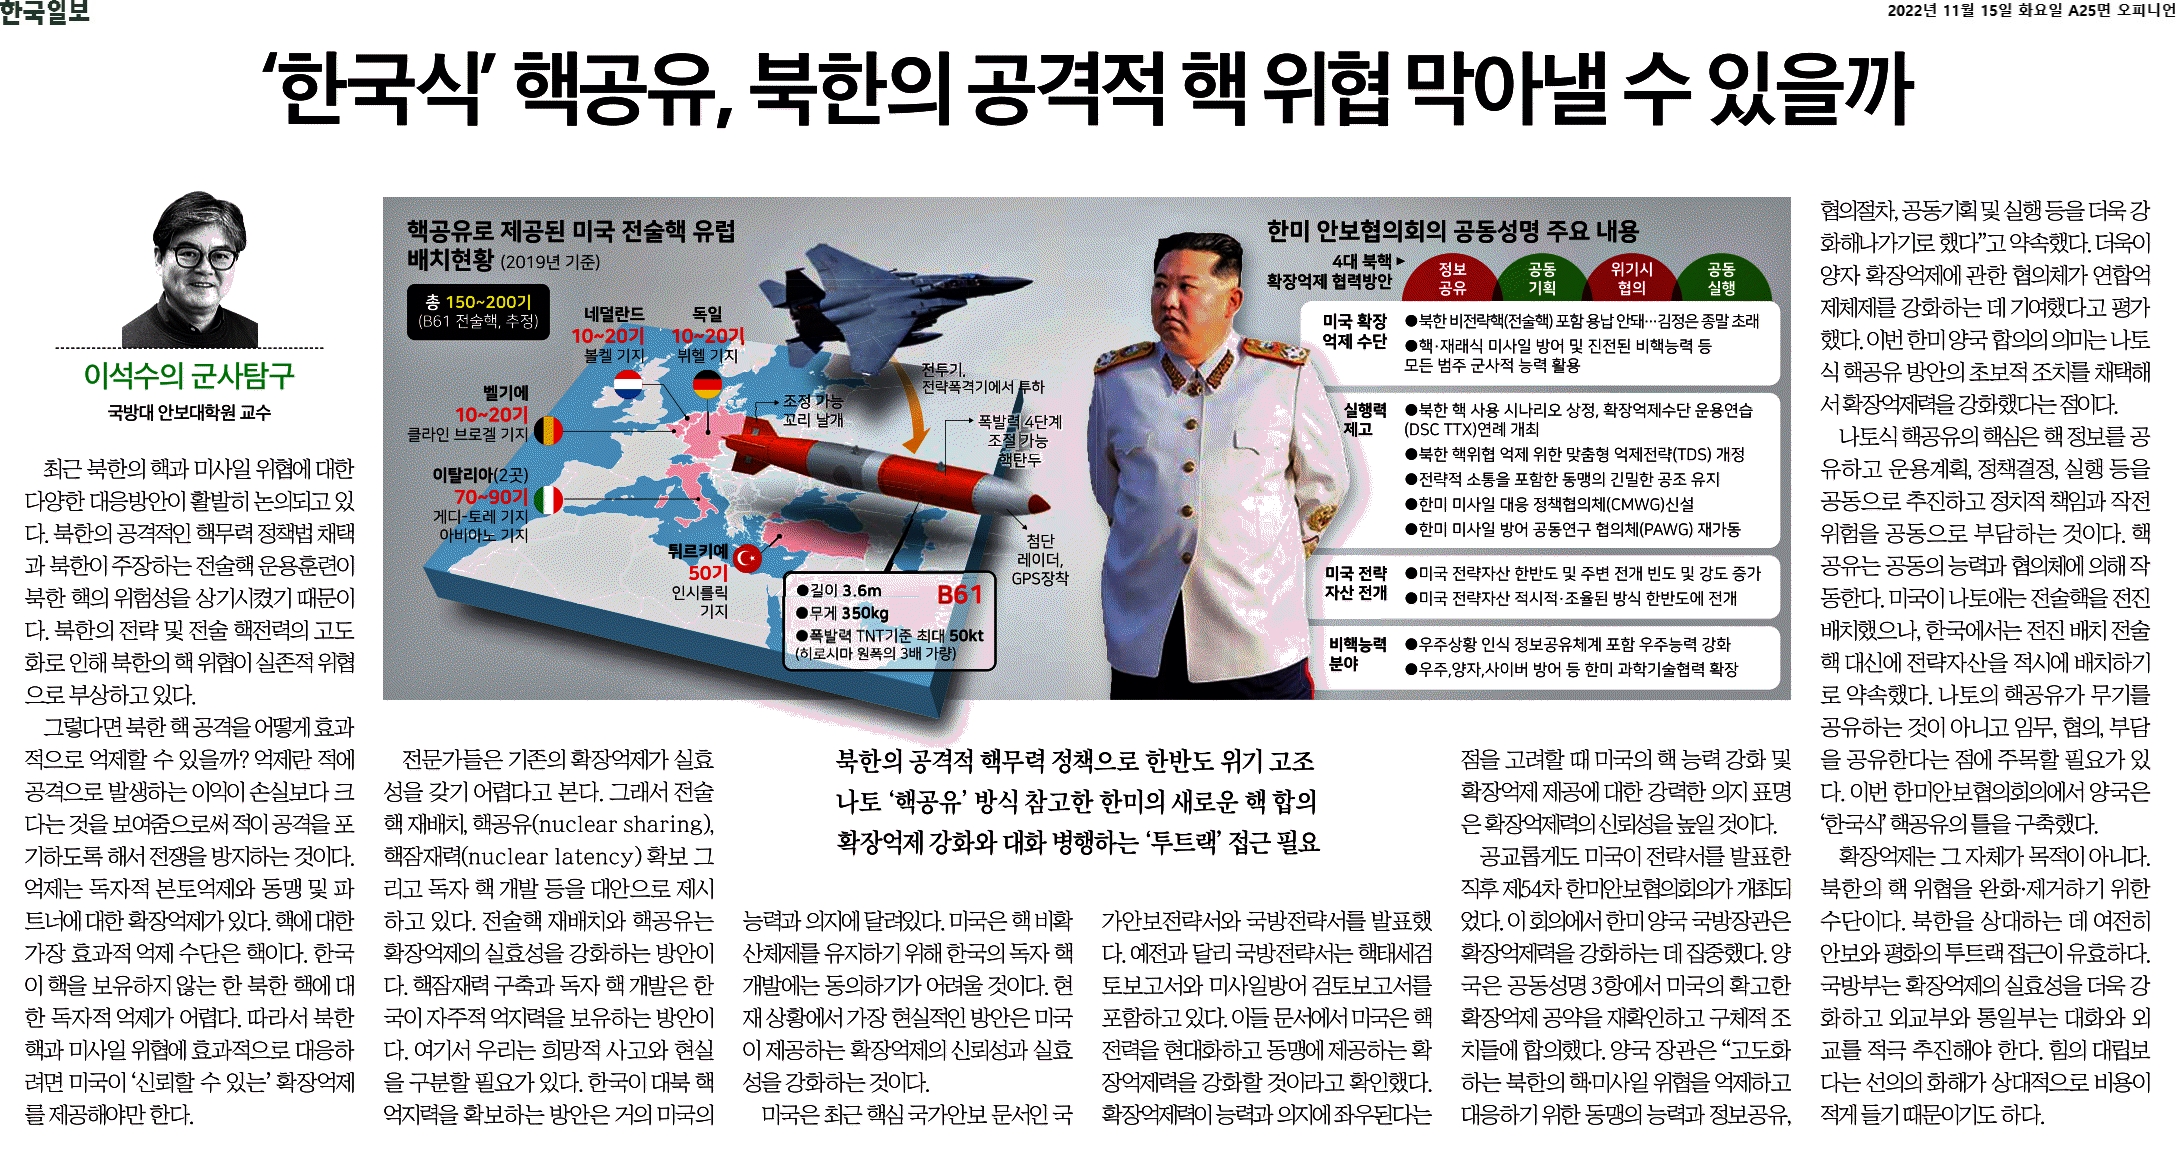 ‘한국식’ 핵공유, 북한의 공격적 핵 위협 막아낼 수 있을까